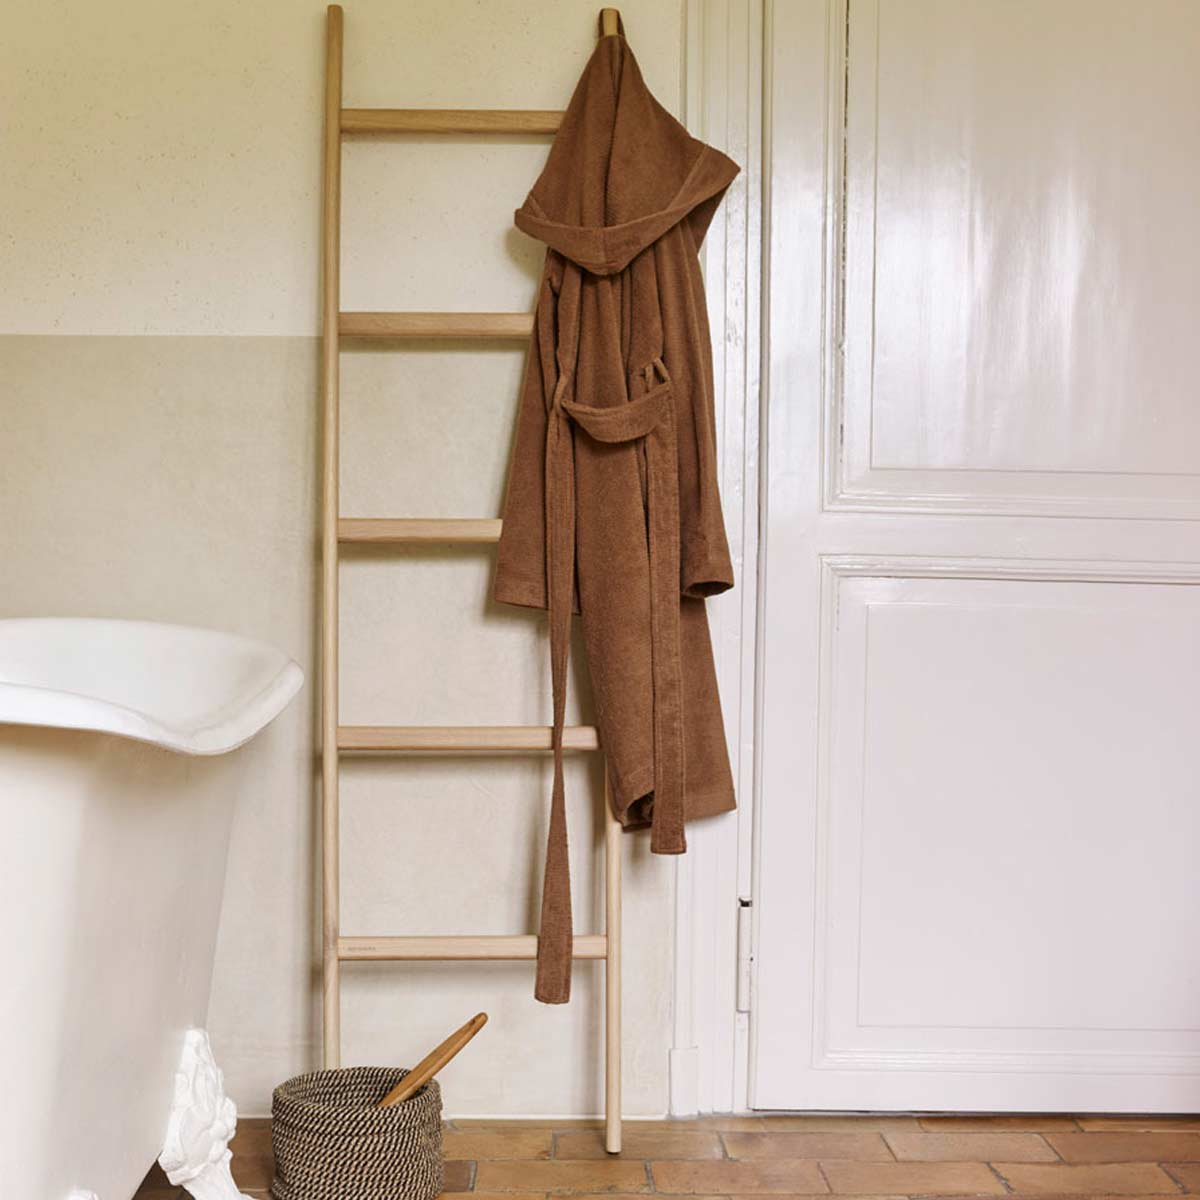 Bagno - vendita online mobili e accessori per il tuo bagno :: Accessori :: Scala  porta asciugamani SUEGIU-N